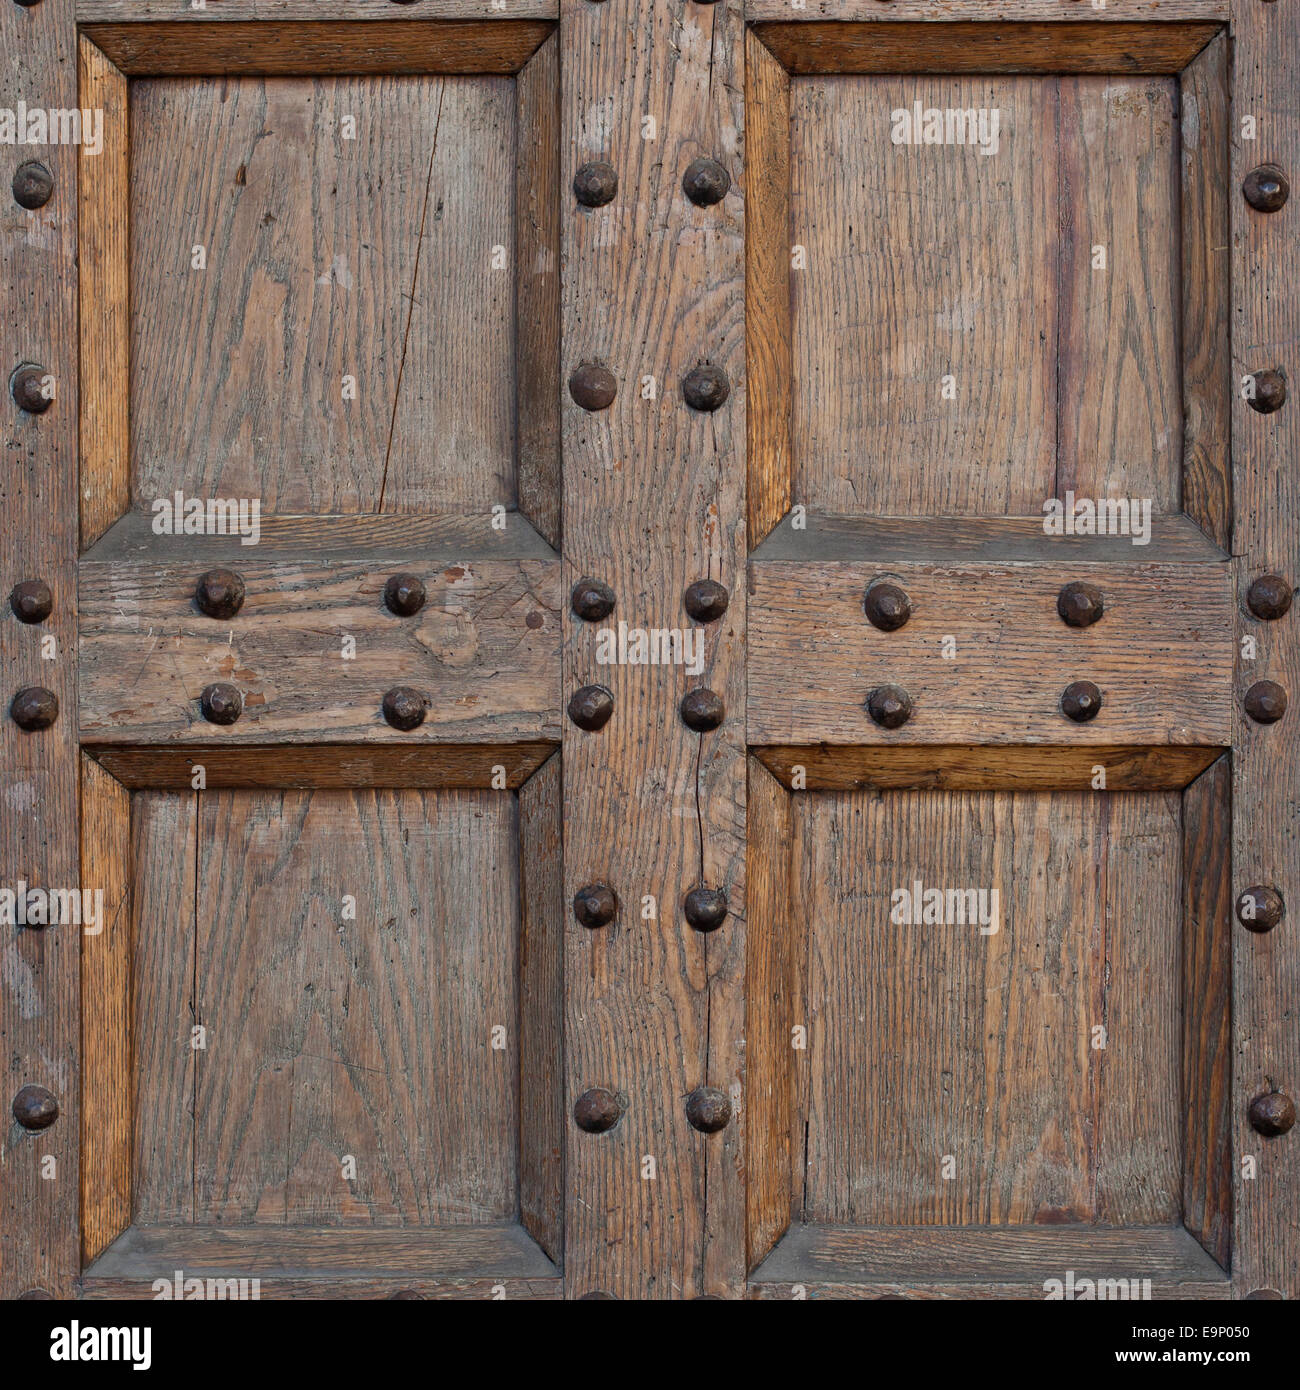 Détail de l'ancienne porte solide. La porte de bois et de métal avec des pointes métalliques à la portée et la formation rocheuse. Une partie de l'ancien château ou forteresse. Banque D'Images